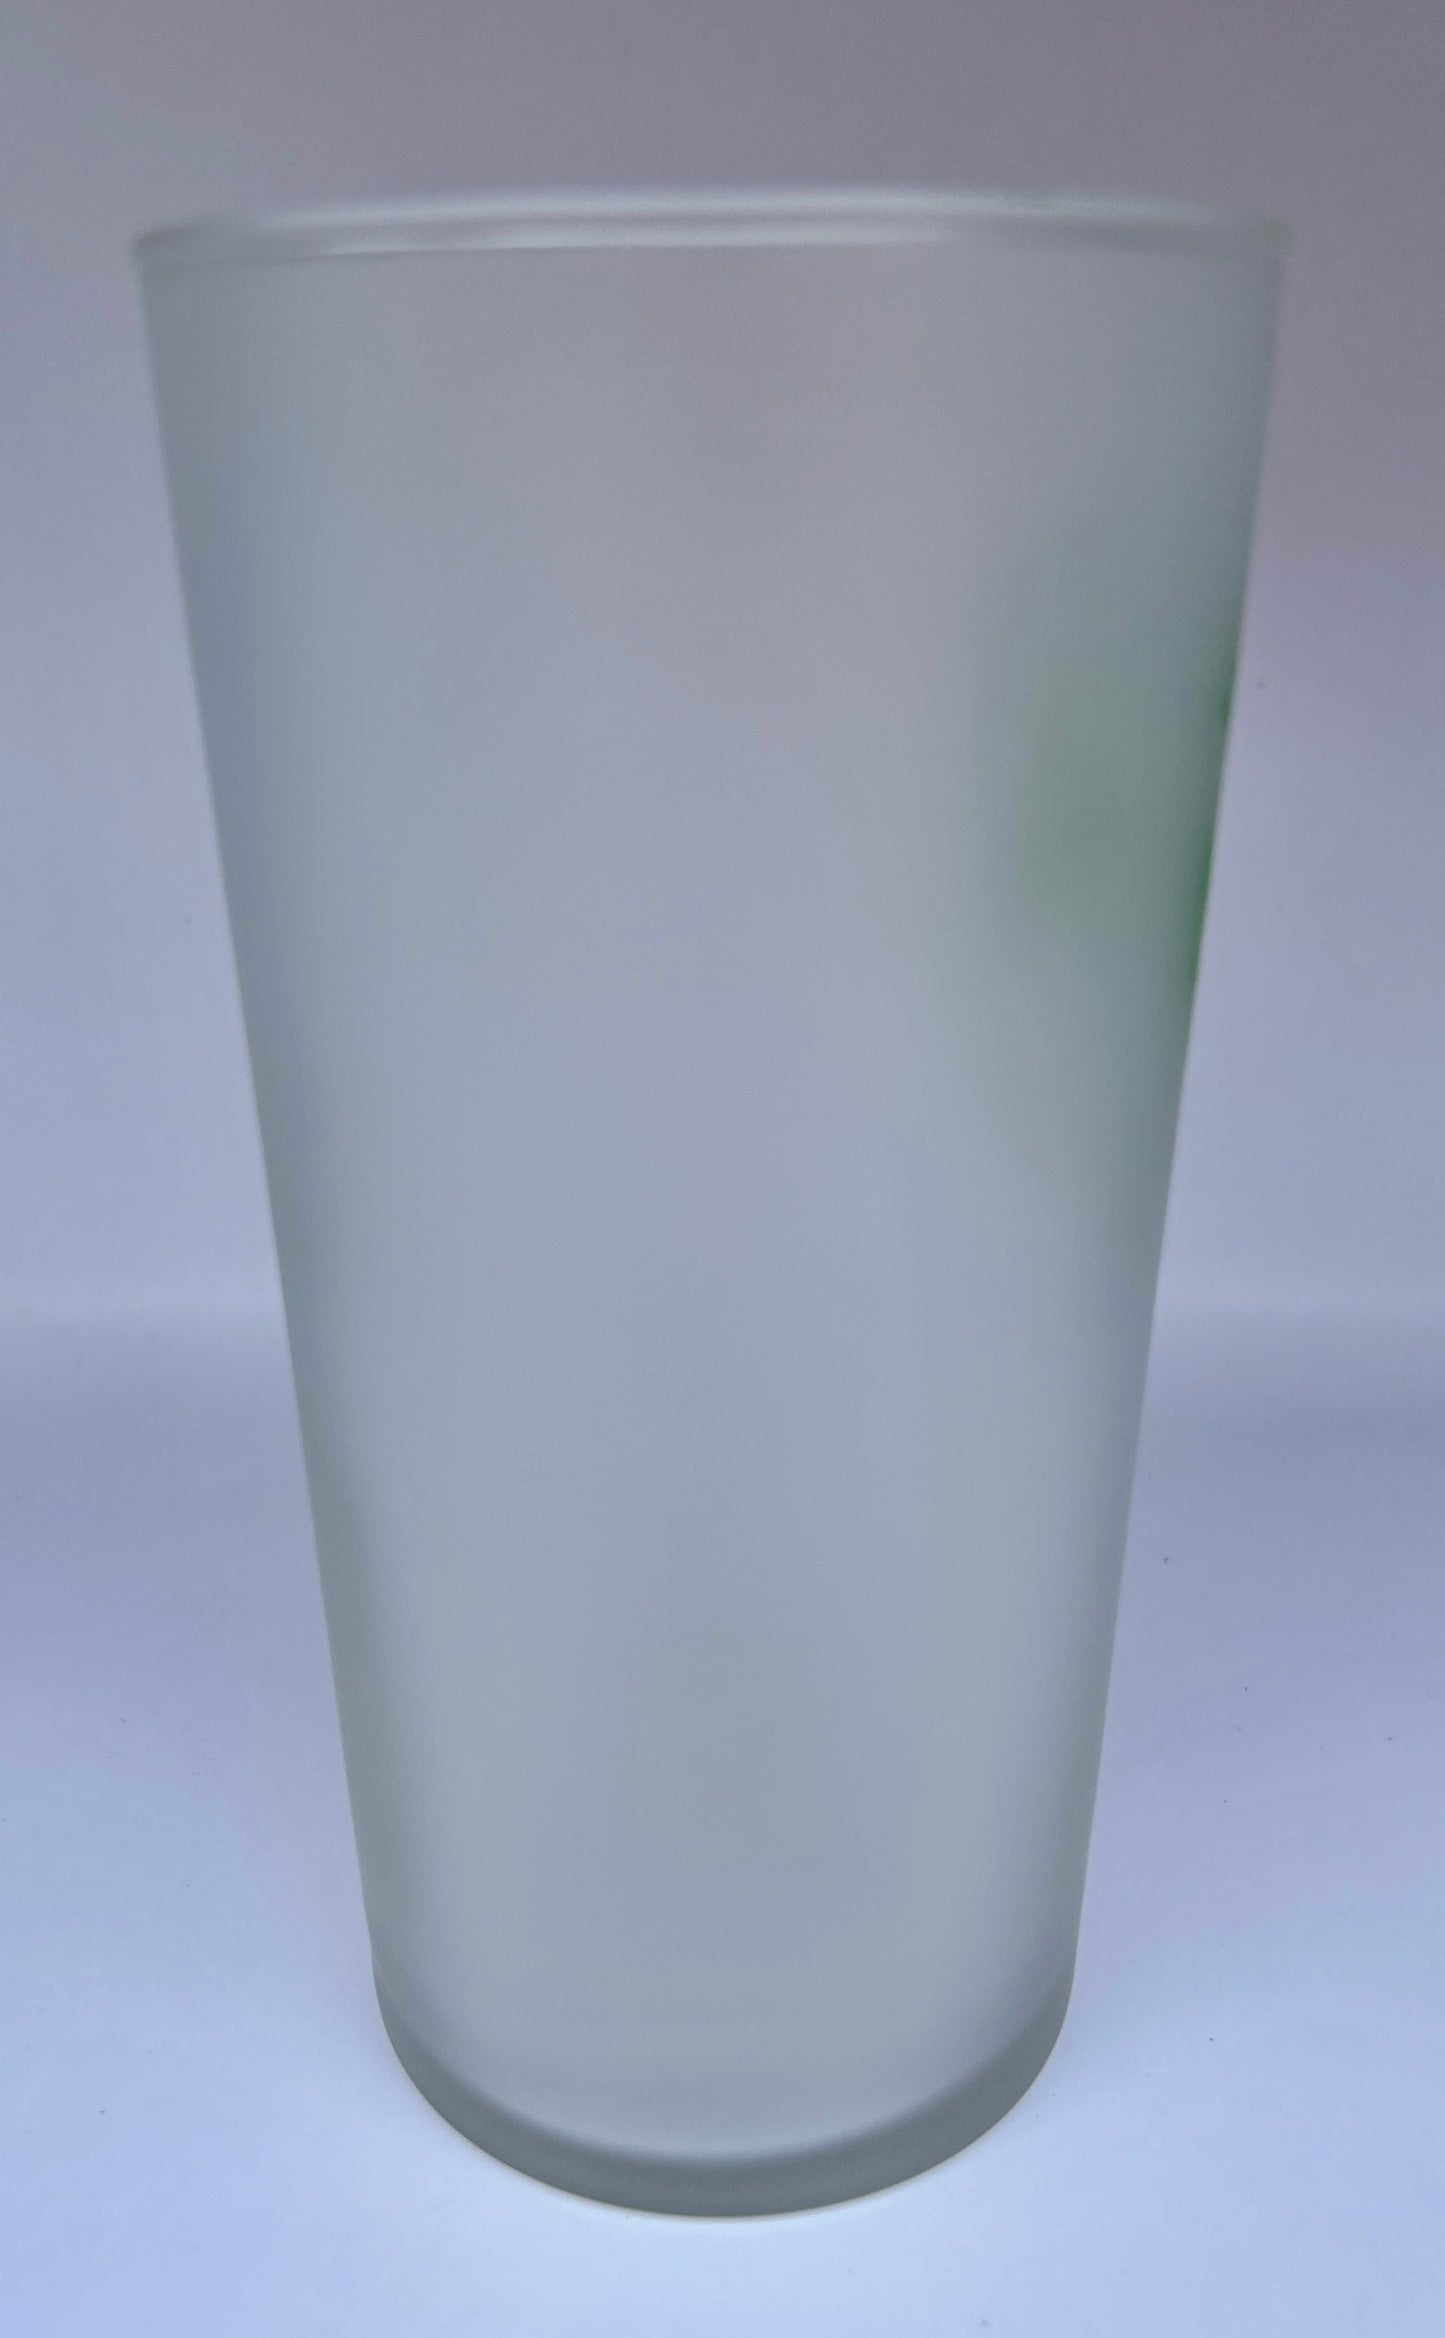 1945 Kentucky Derby Glass - Short